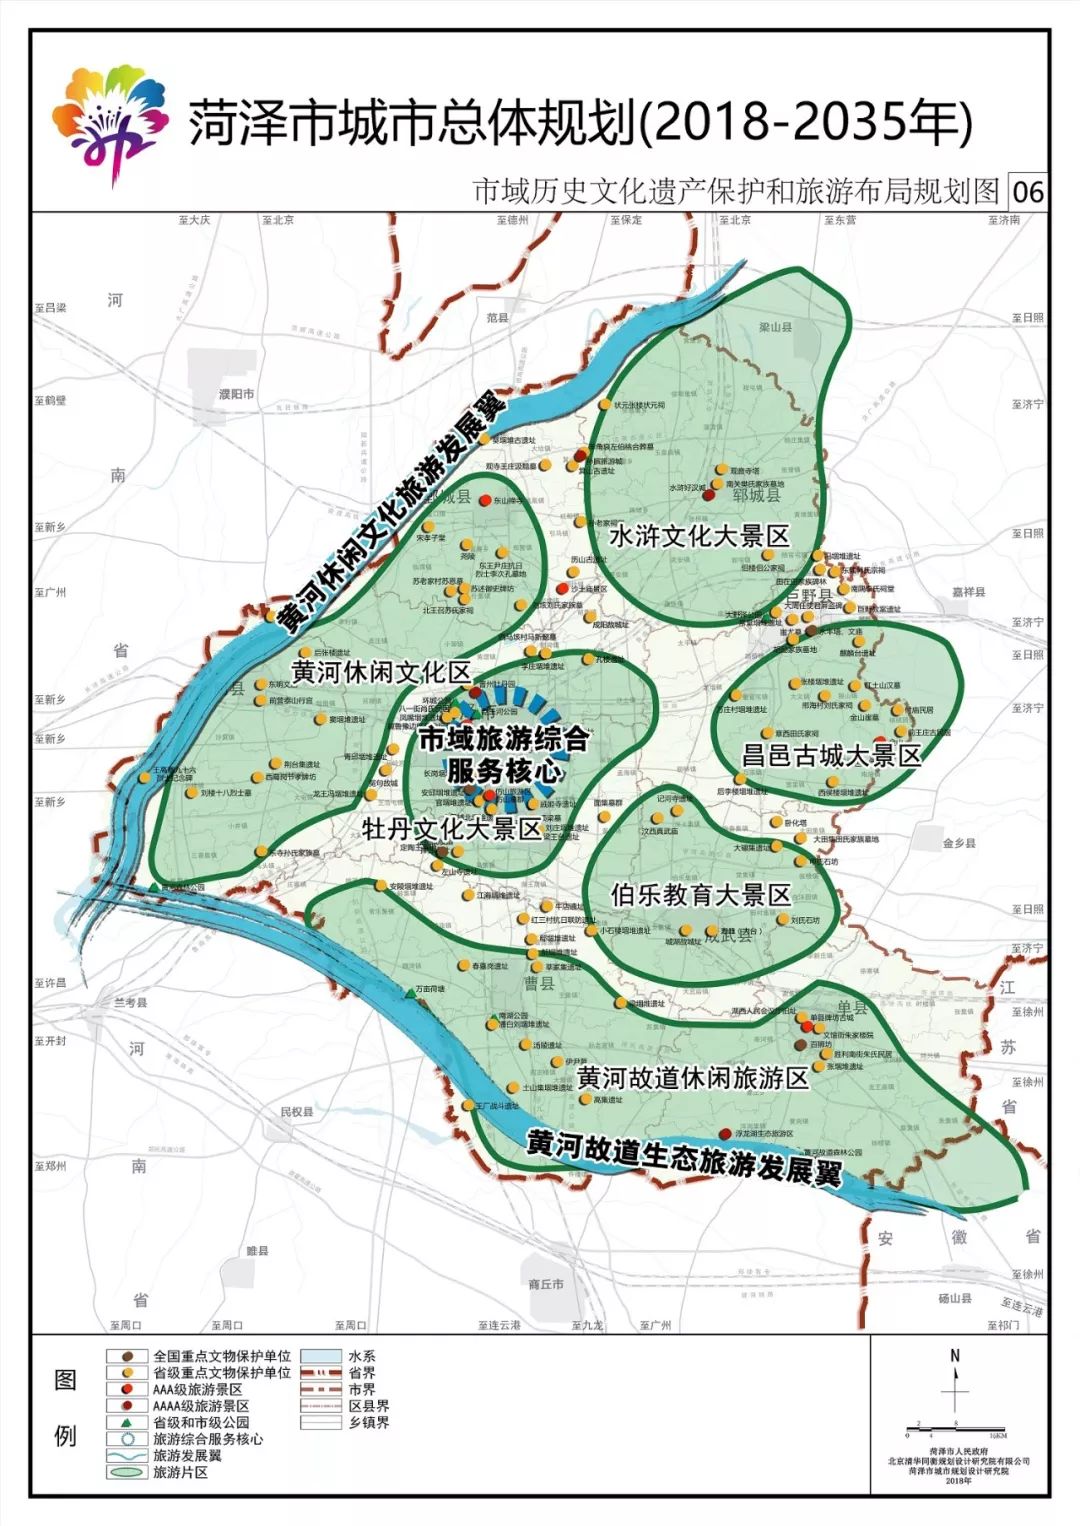 东明县小井镇规划图片